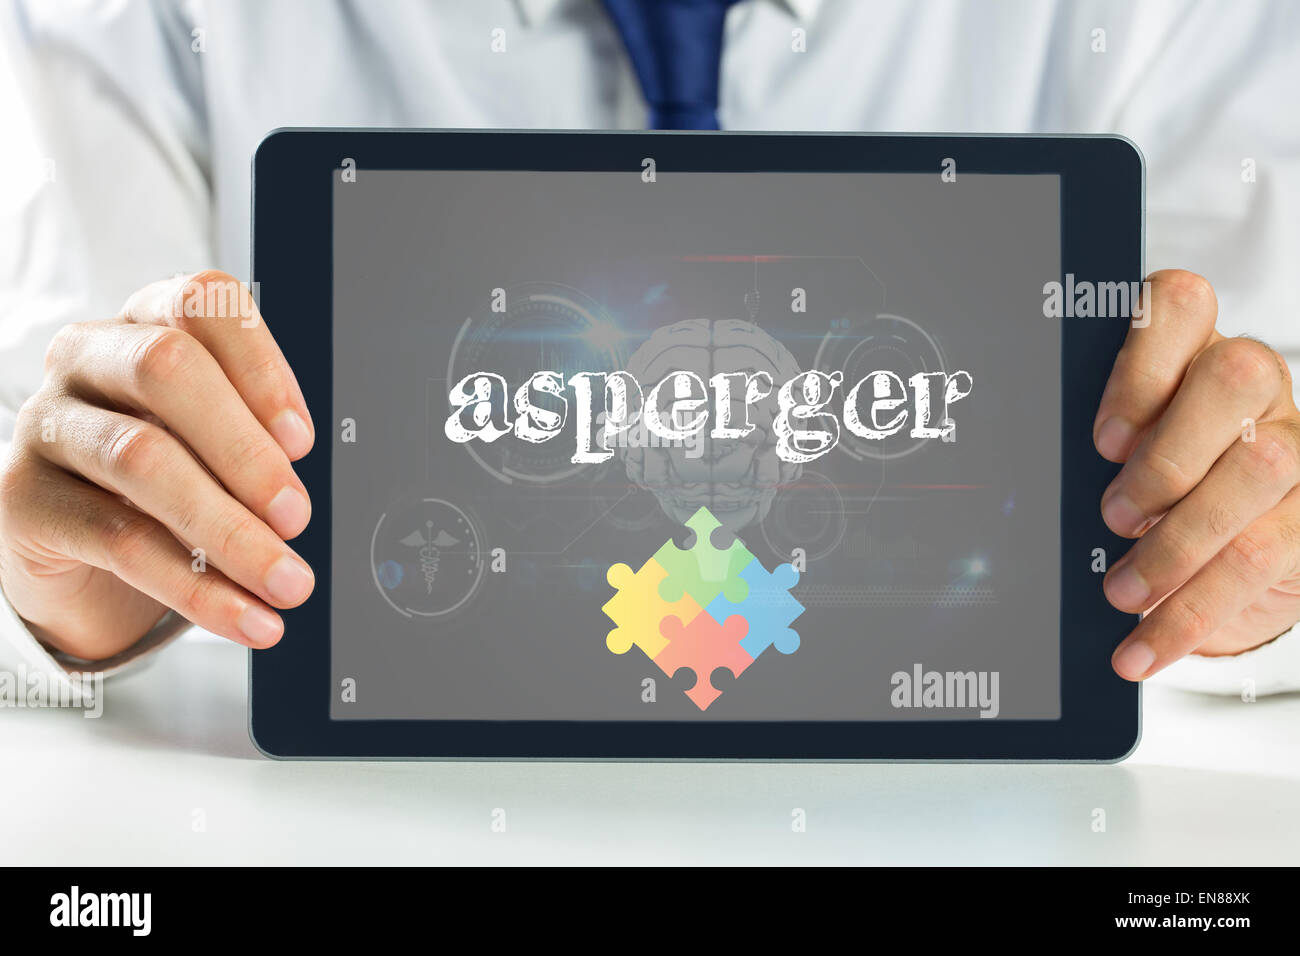 Interface biologie médicale contre Asperger en noir Banque D'Images